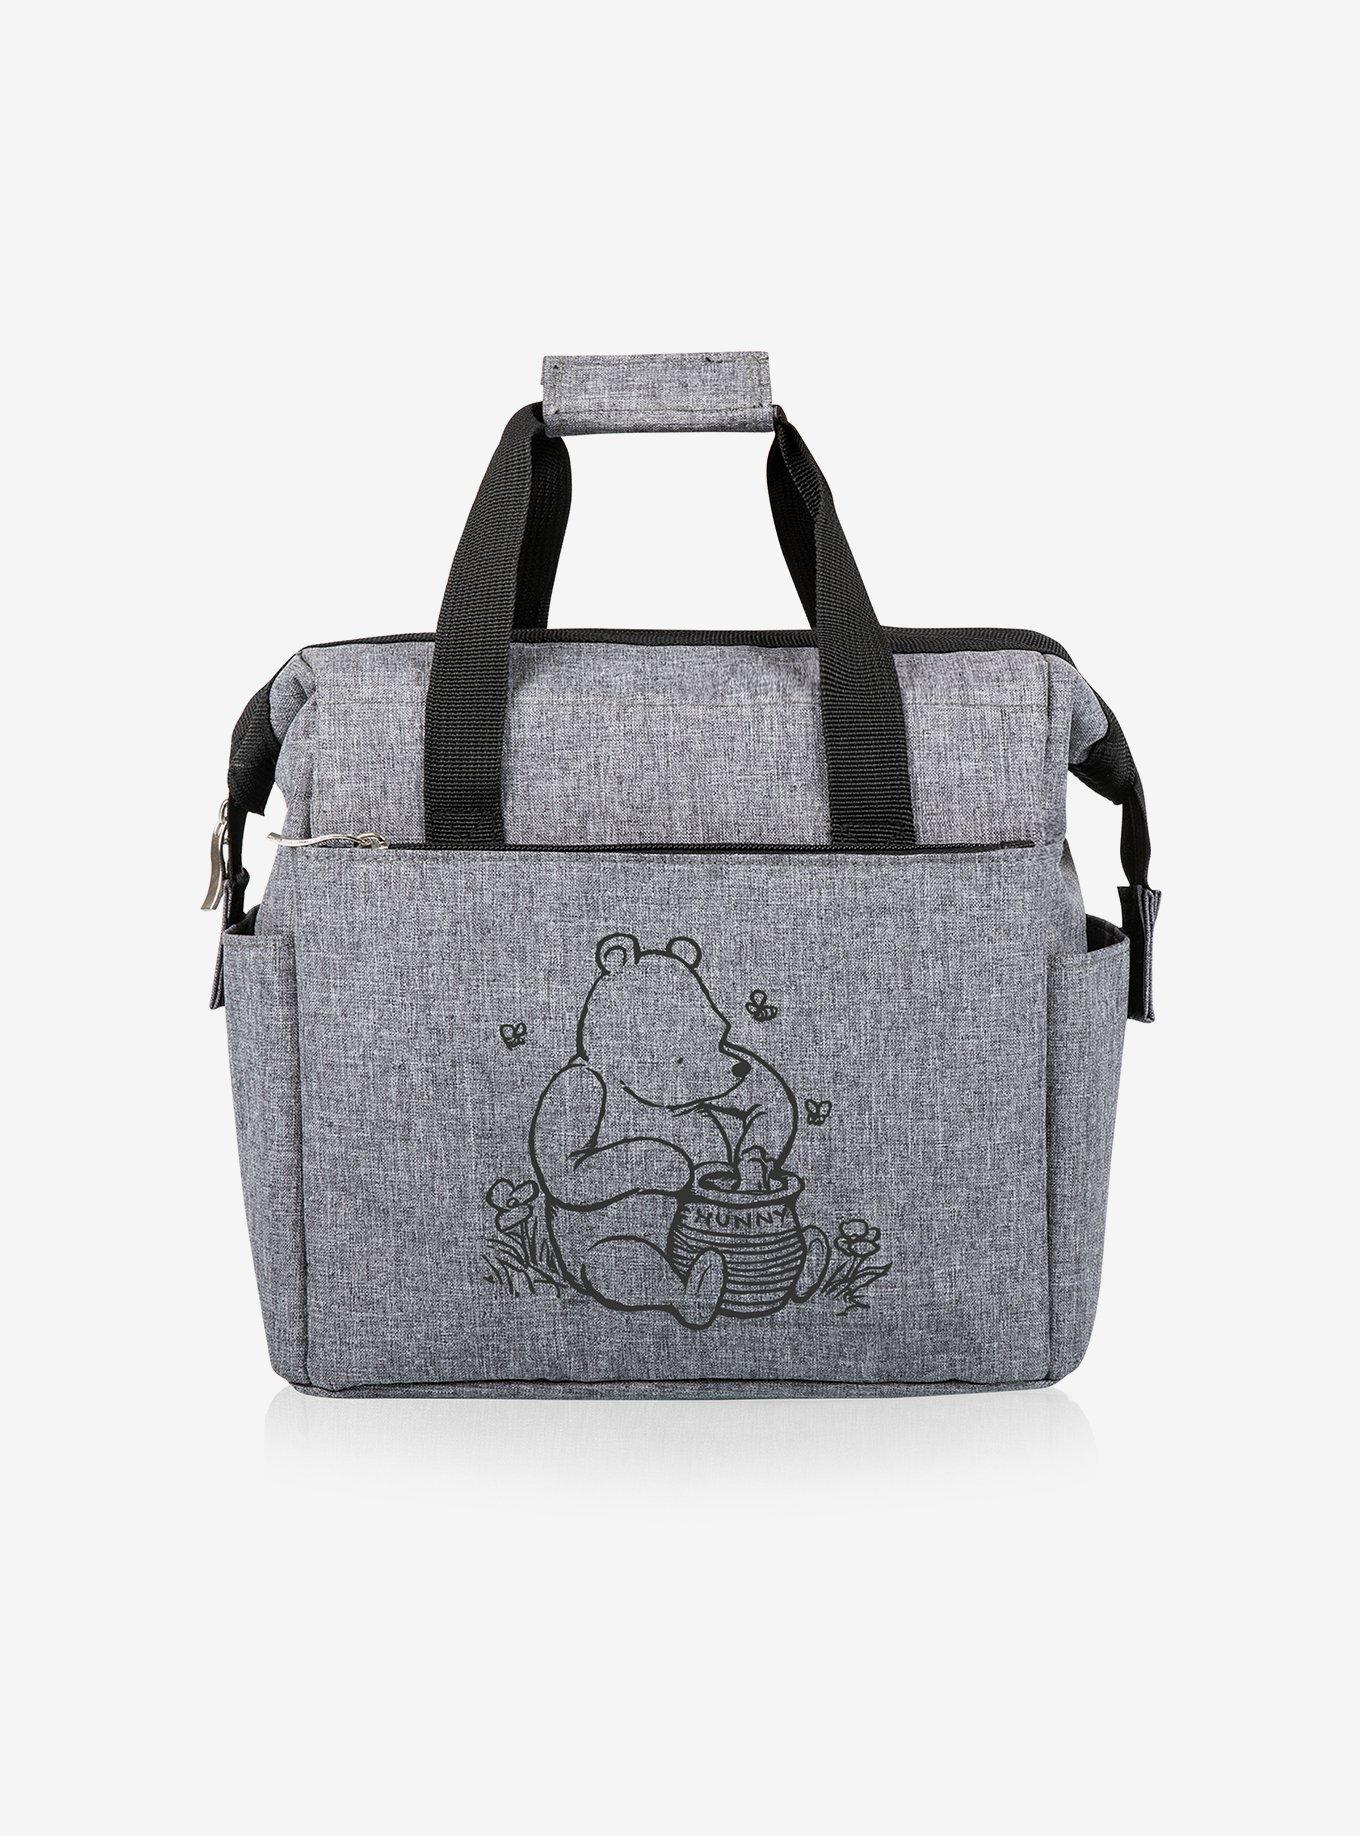 Disney Winnie The Pooh Uptown Cooler Tote Bag - Black